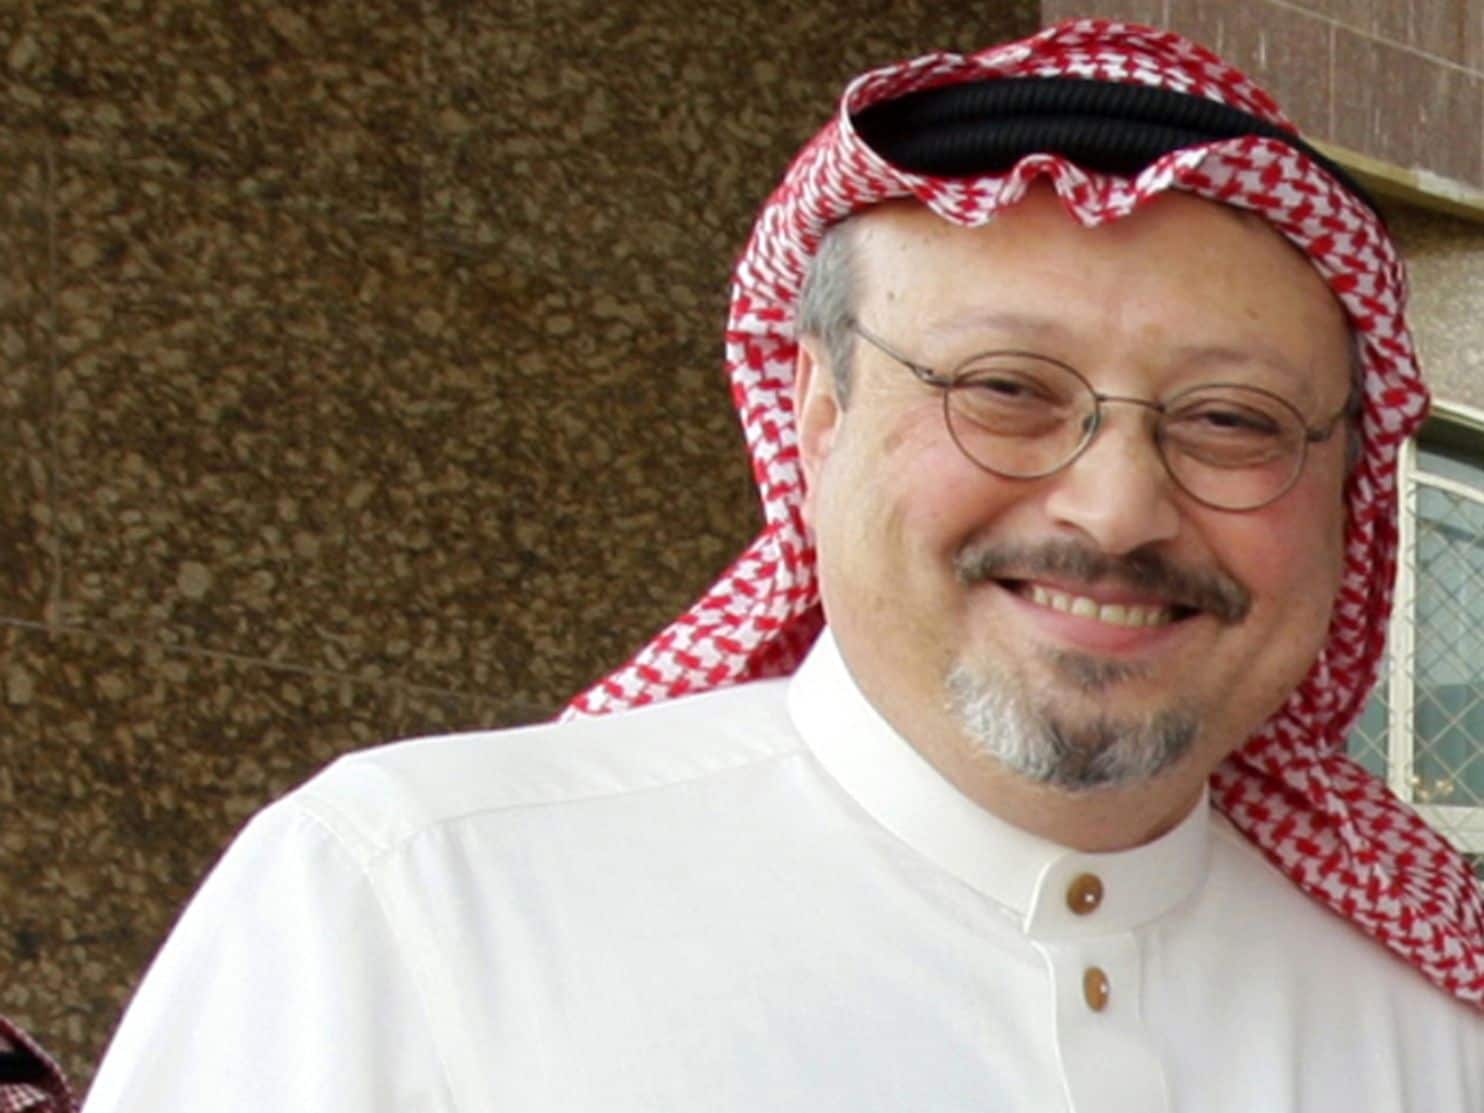 Arábia Saudita promete investigação “imparcial” à morte de Khashoggi